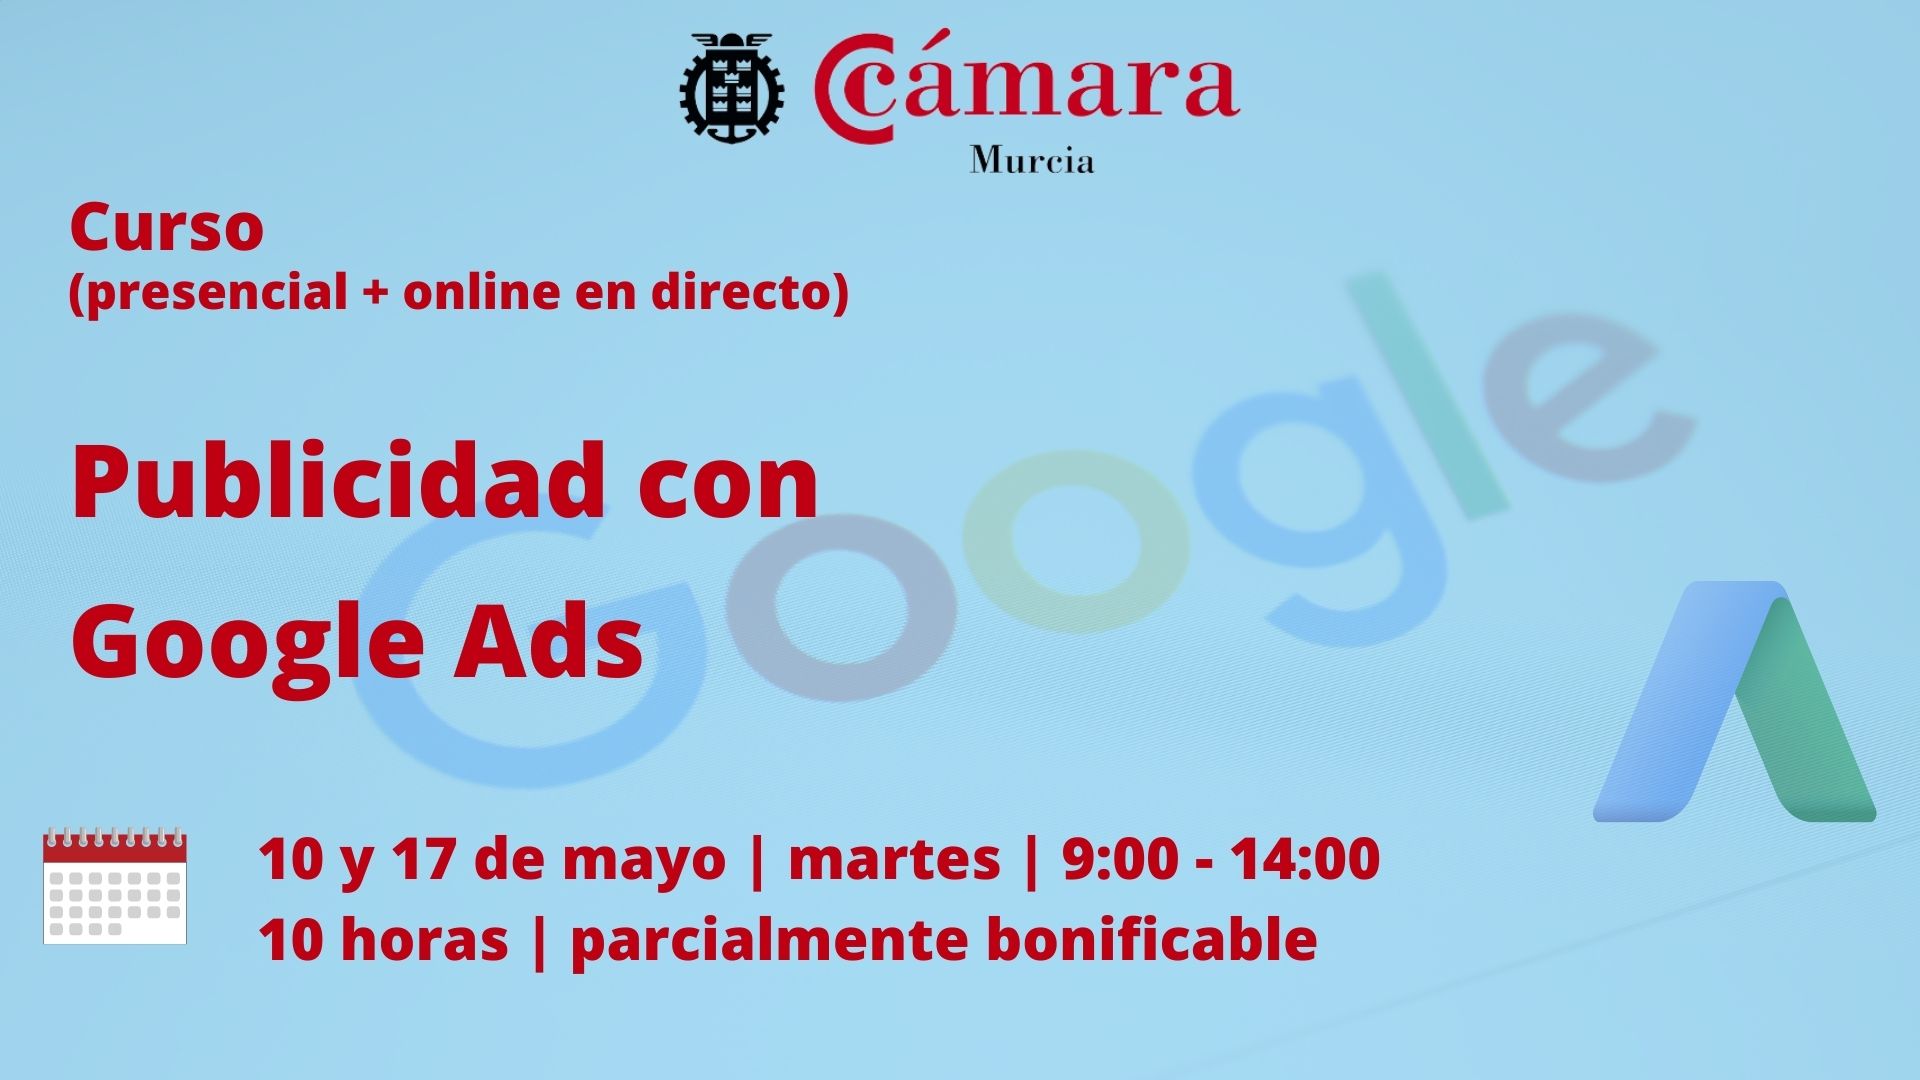 Curso online + presencial en directo | Publicidad con Google Ads